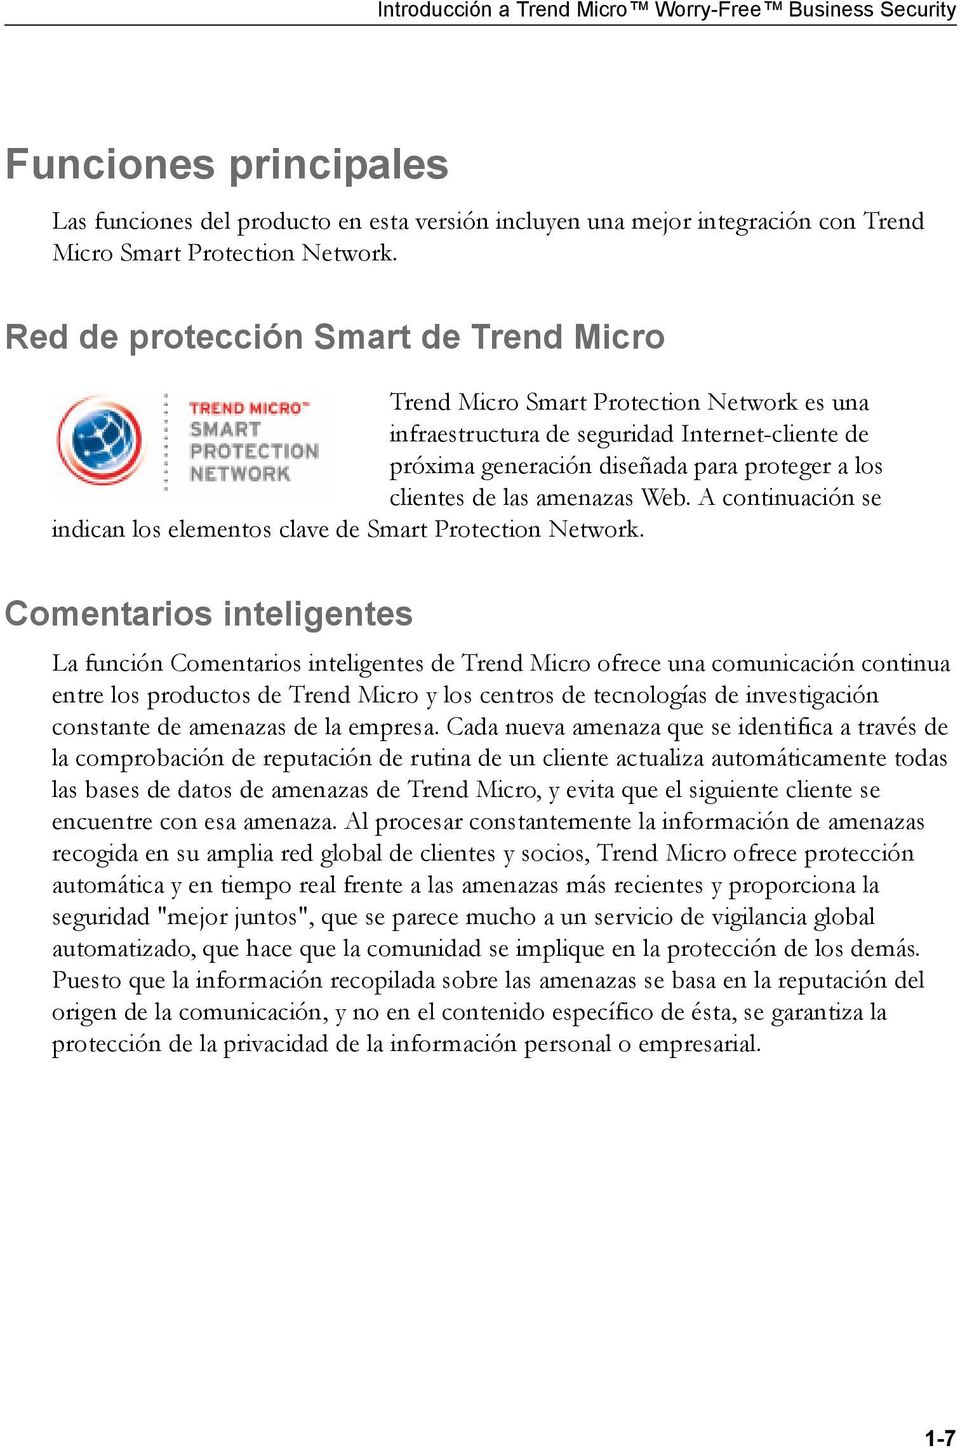 amenazas Web. A continuación se indican los elementos clave de Smart Protection Network.